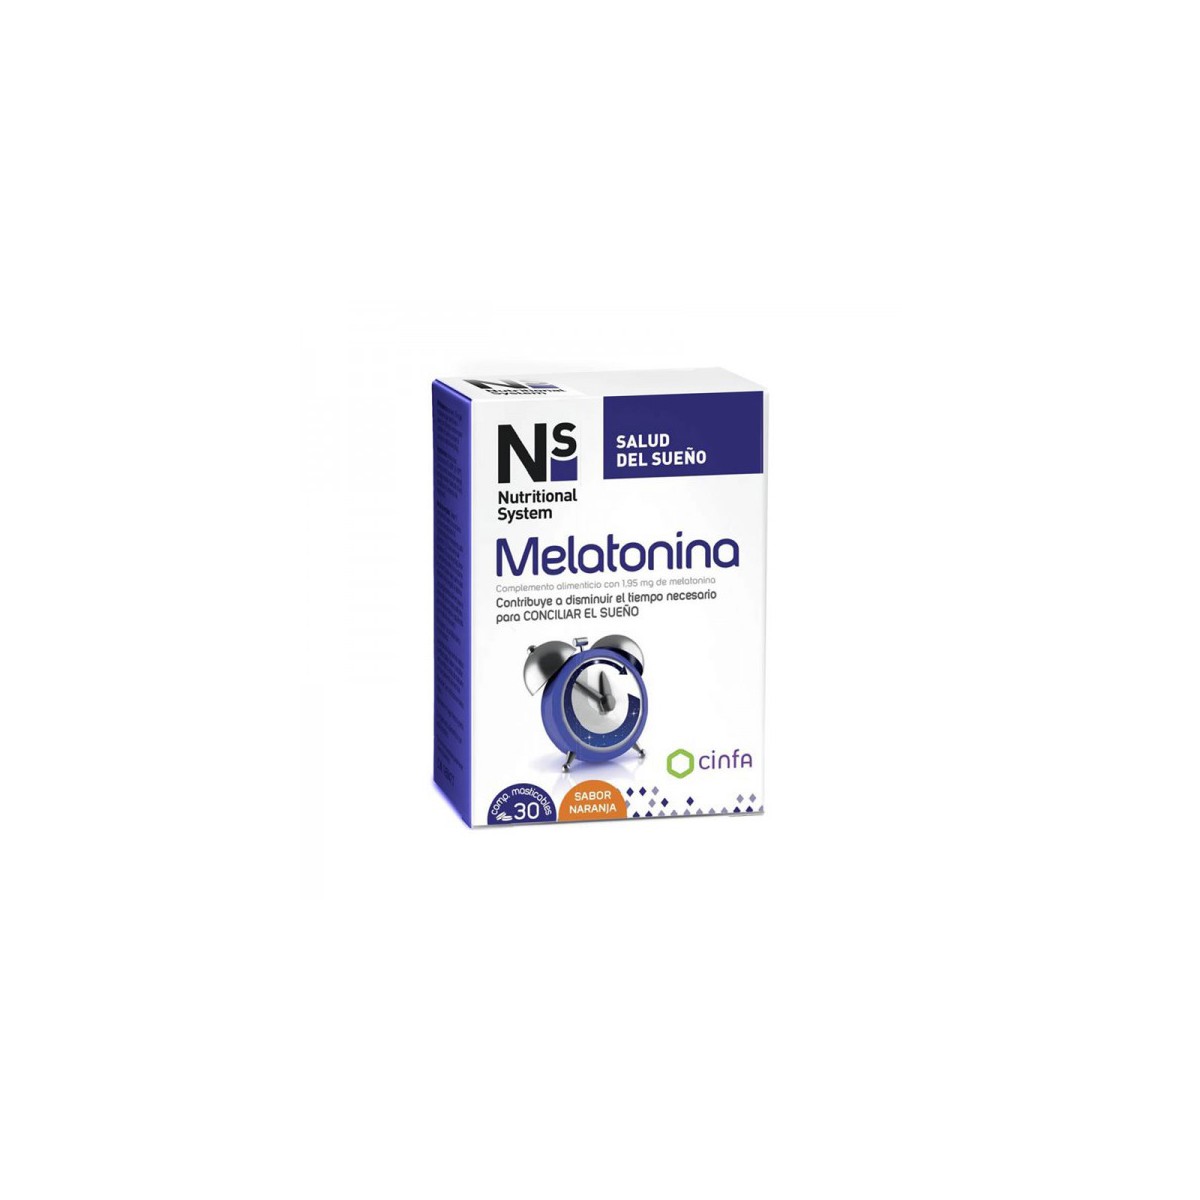 NS Melatonina 30 comprimidos masticables de naranja